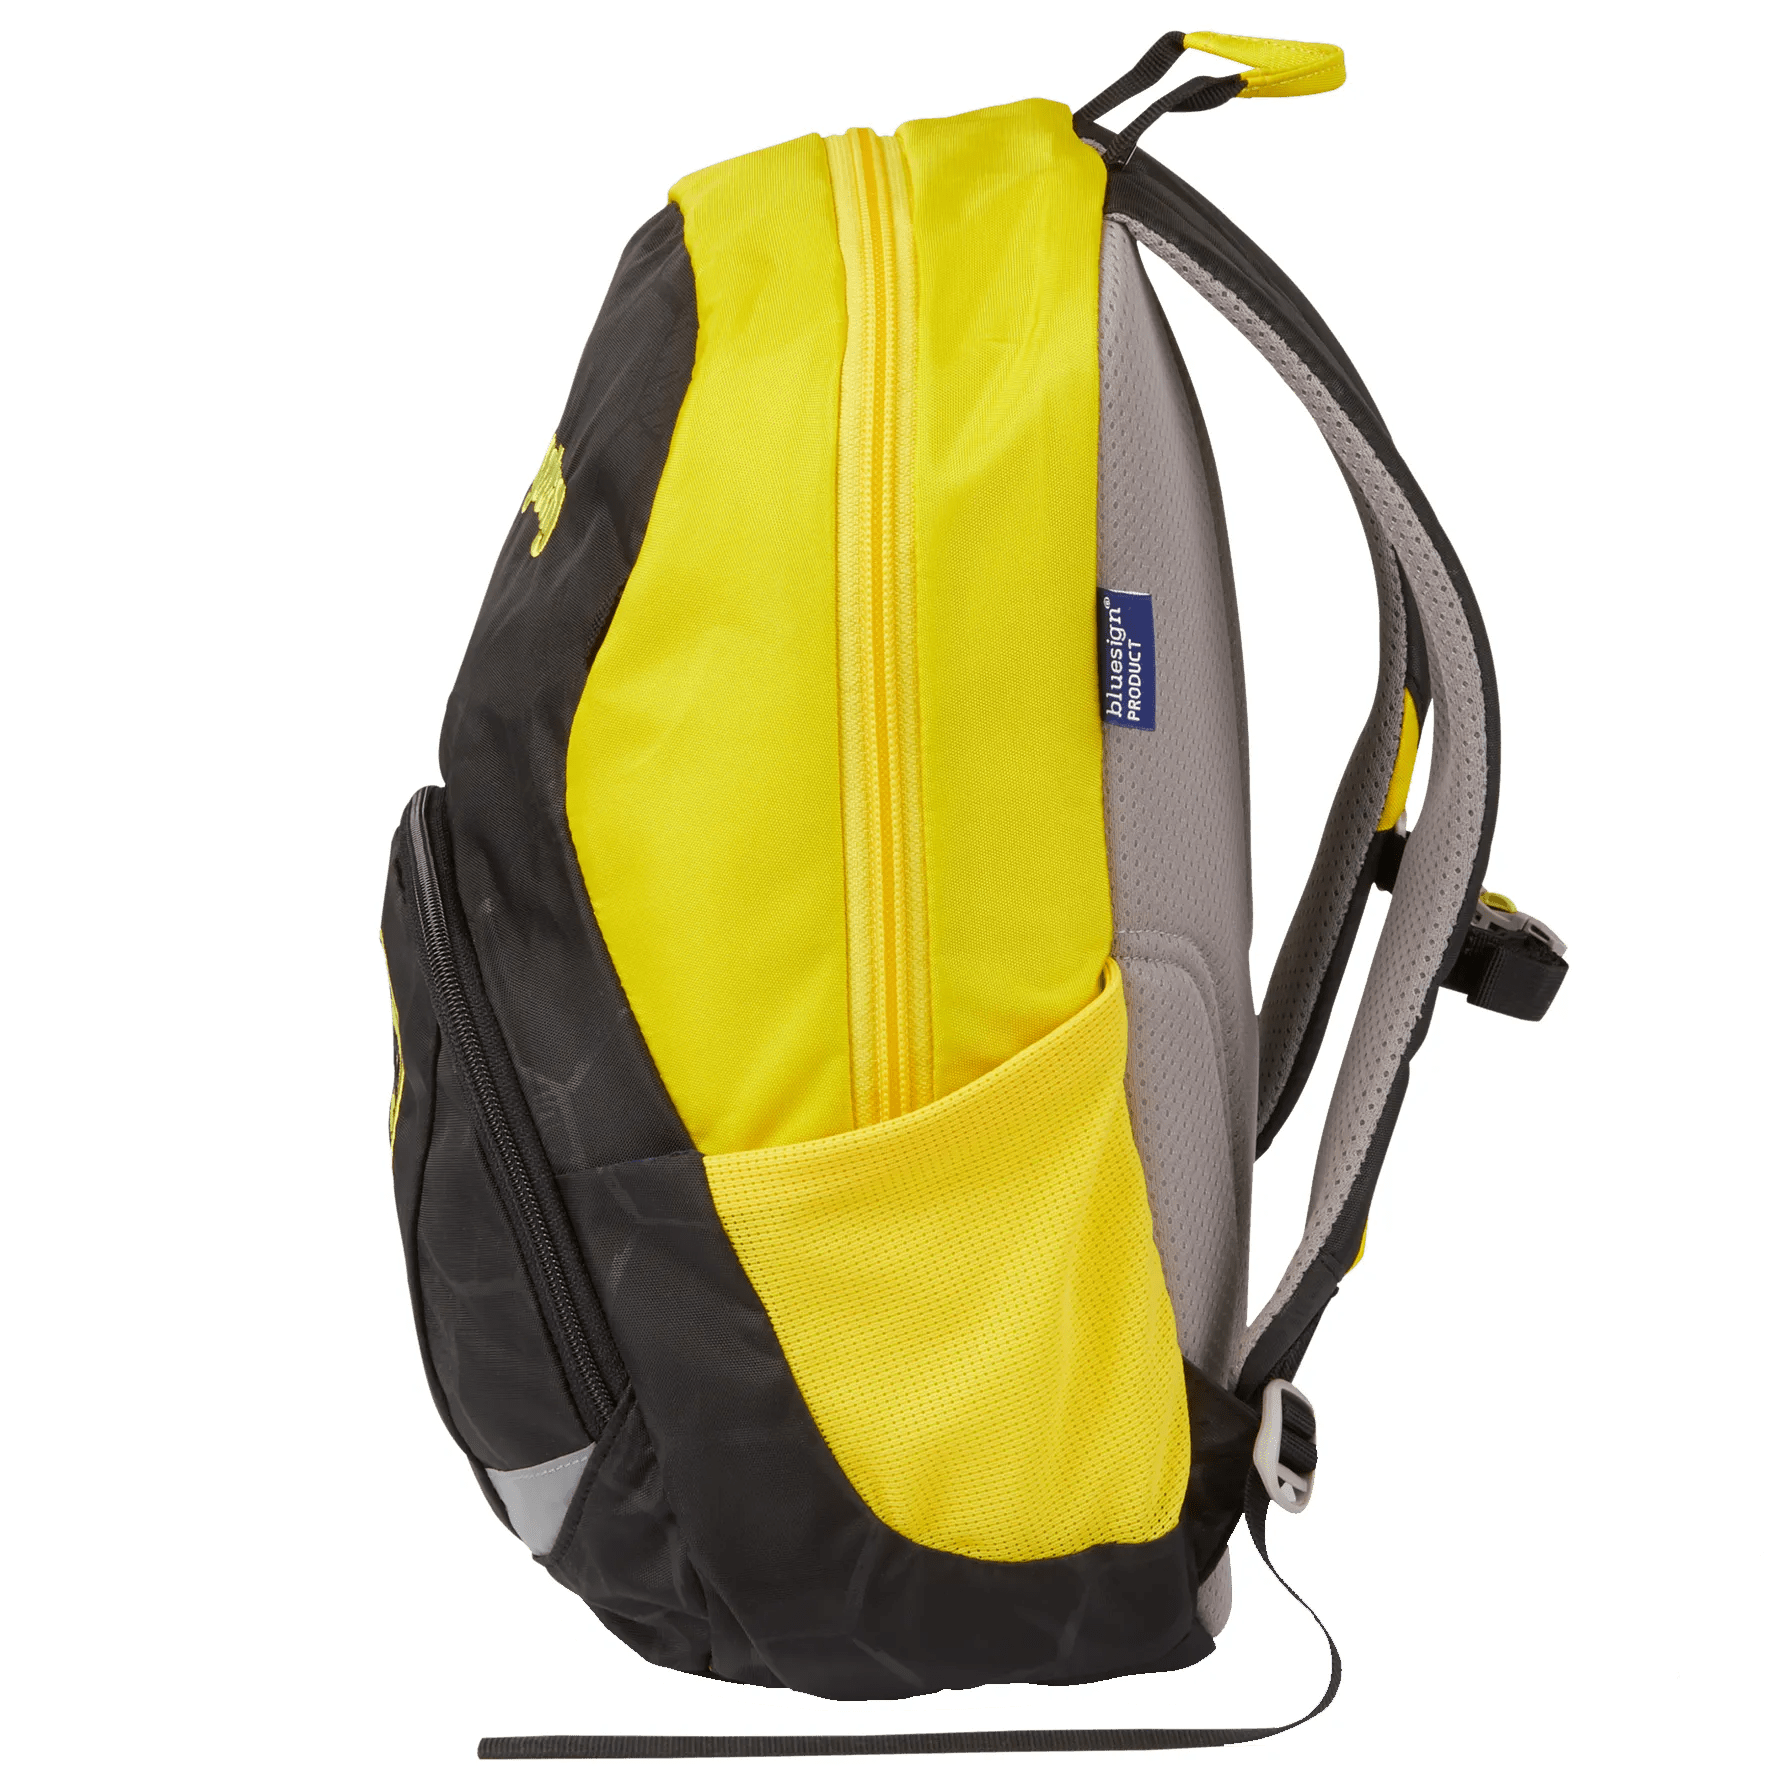 Ergobag Ease Large children's backpack 35 cm - Borussia Dortmund